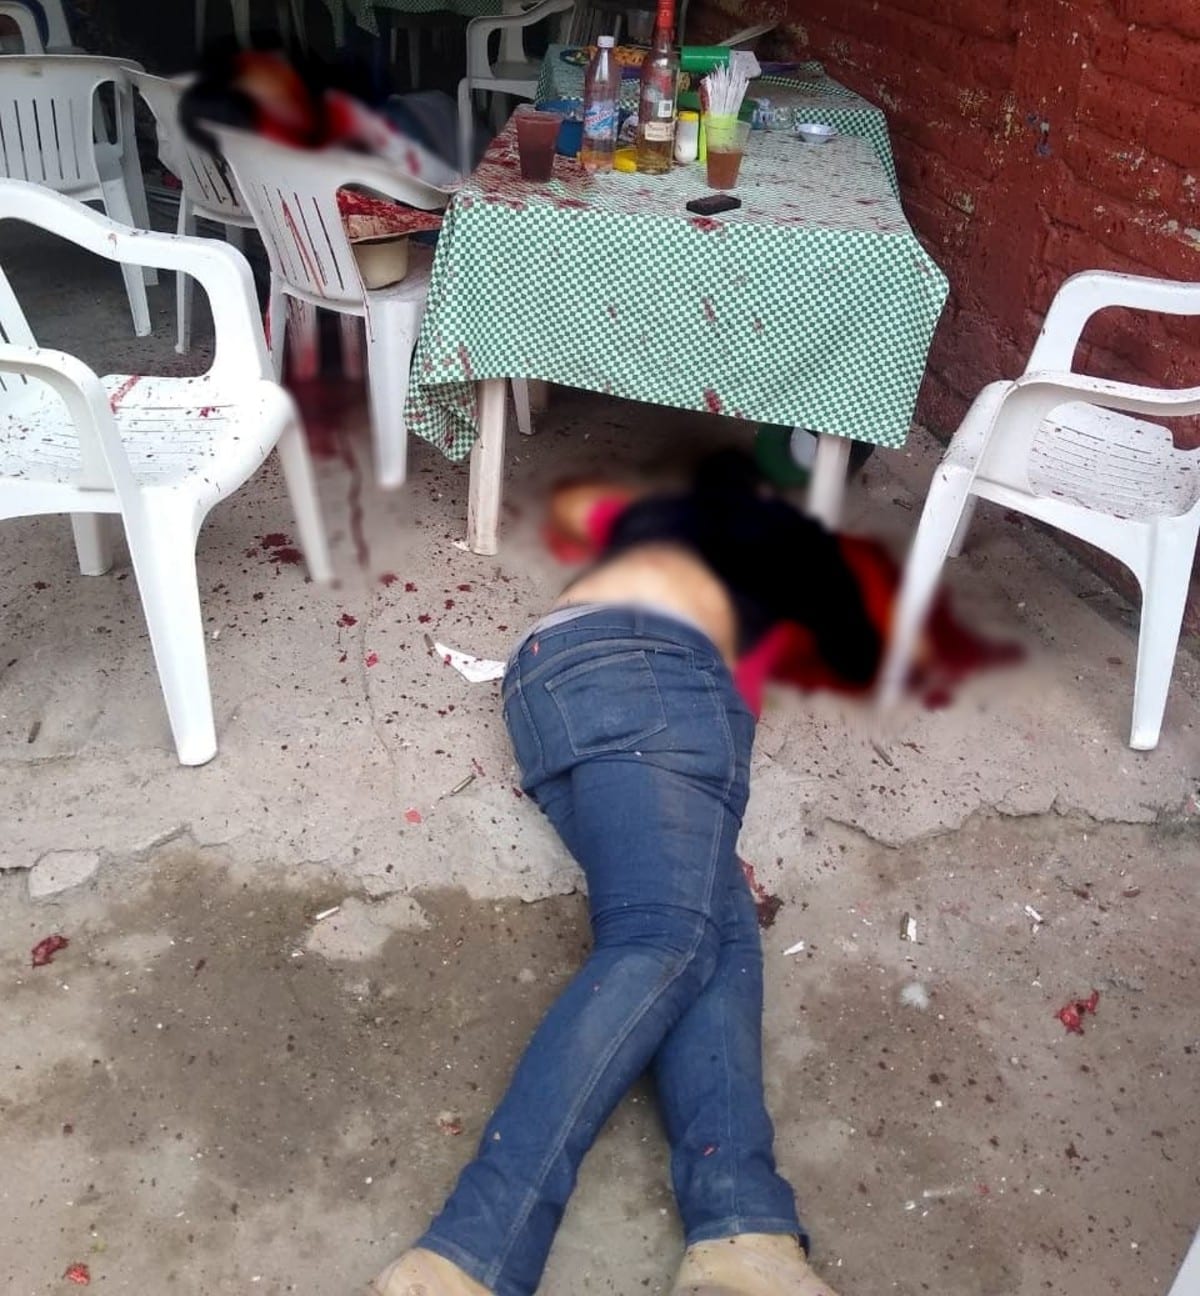 Cinco hombres fueron aniquilados por un comando que ingresó y disparó contra ellos en un antro de nombre “Memo”, en Jalisco, ubicado sobre la carretera Guadalajara-Jiquilpan.